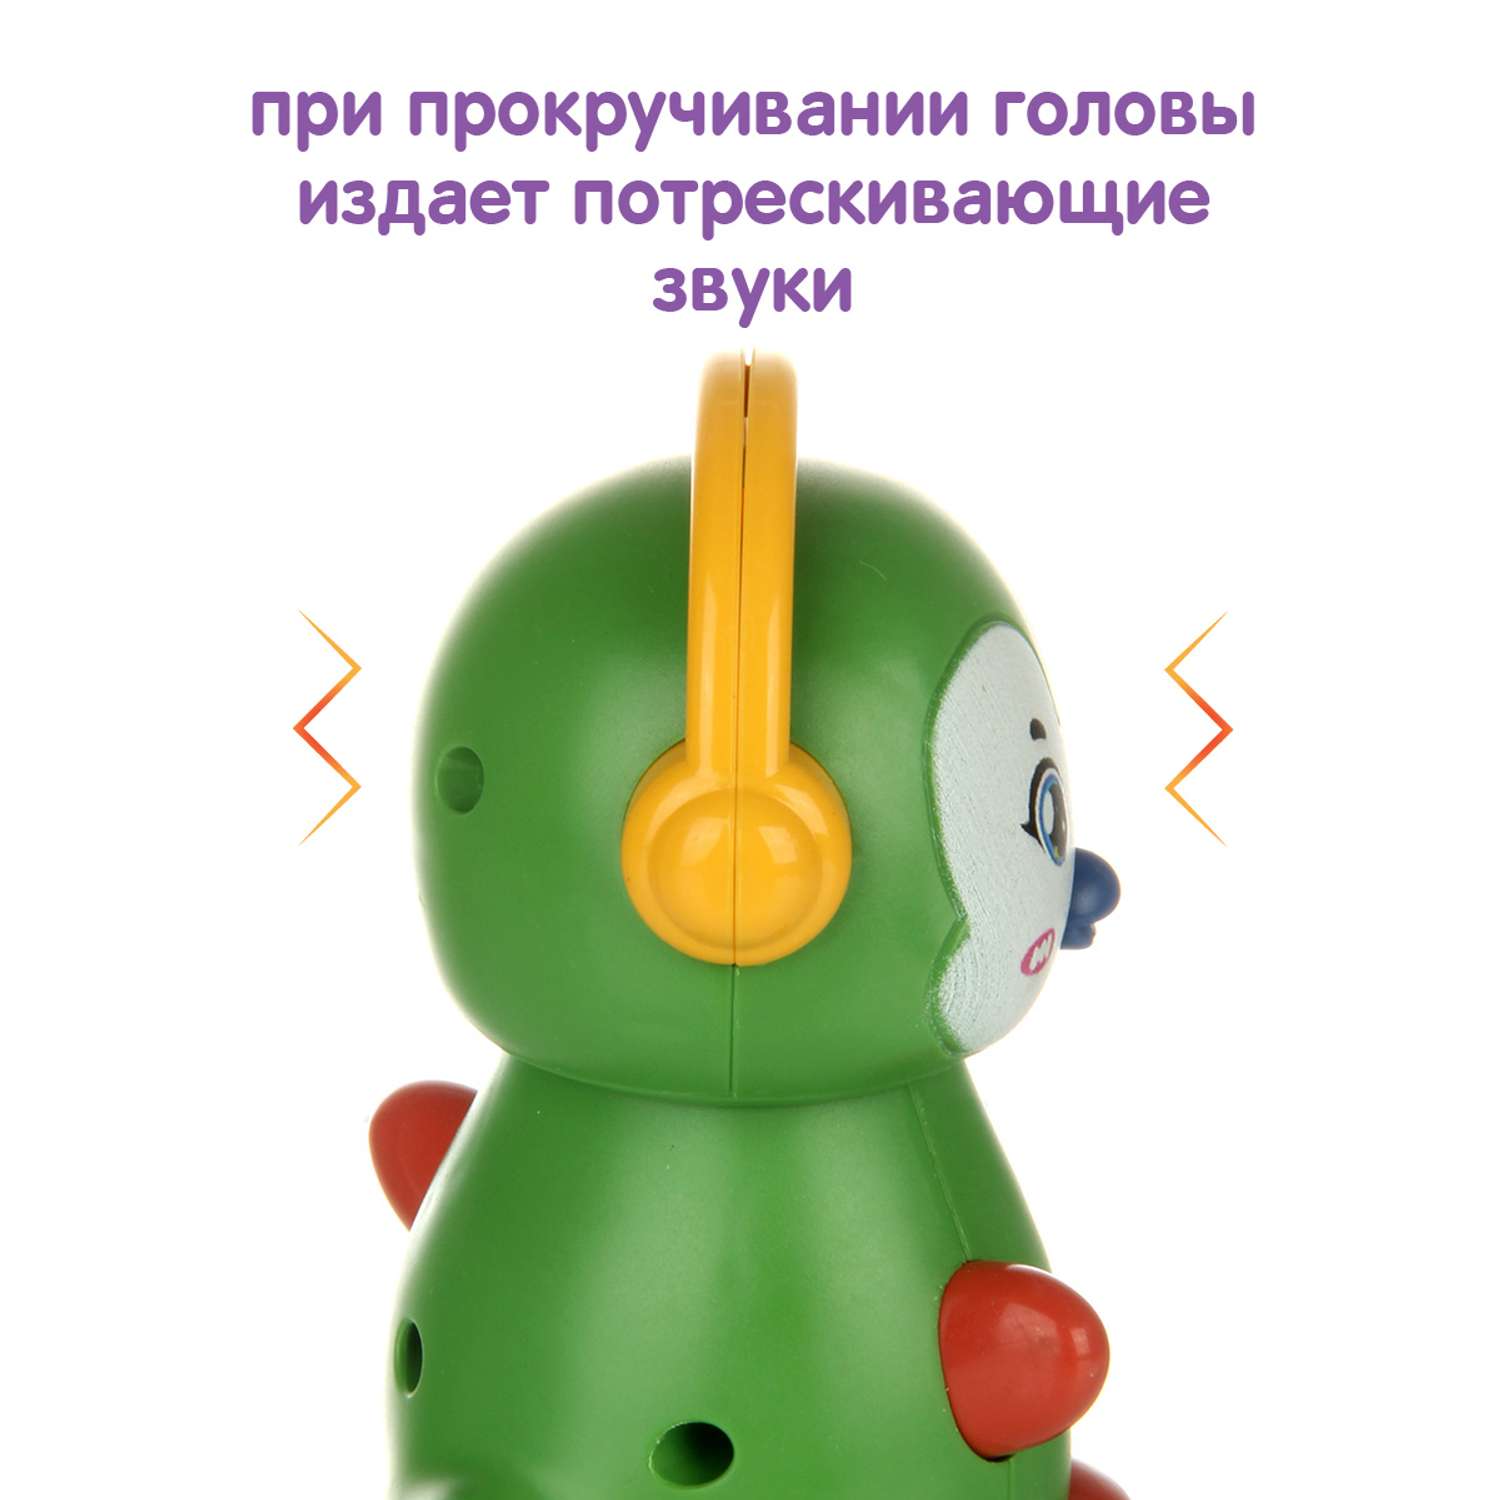 Развивающая игрушка Ути Пути Покатушка Пингвин со звуками - фото 5